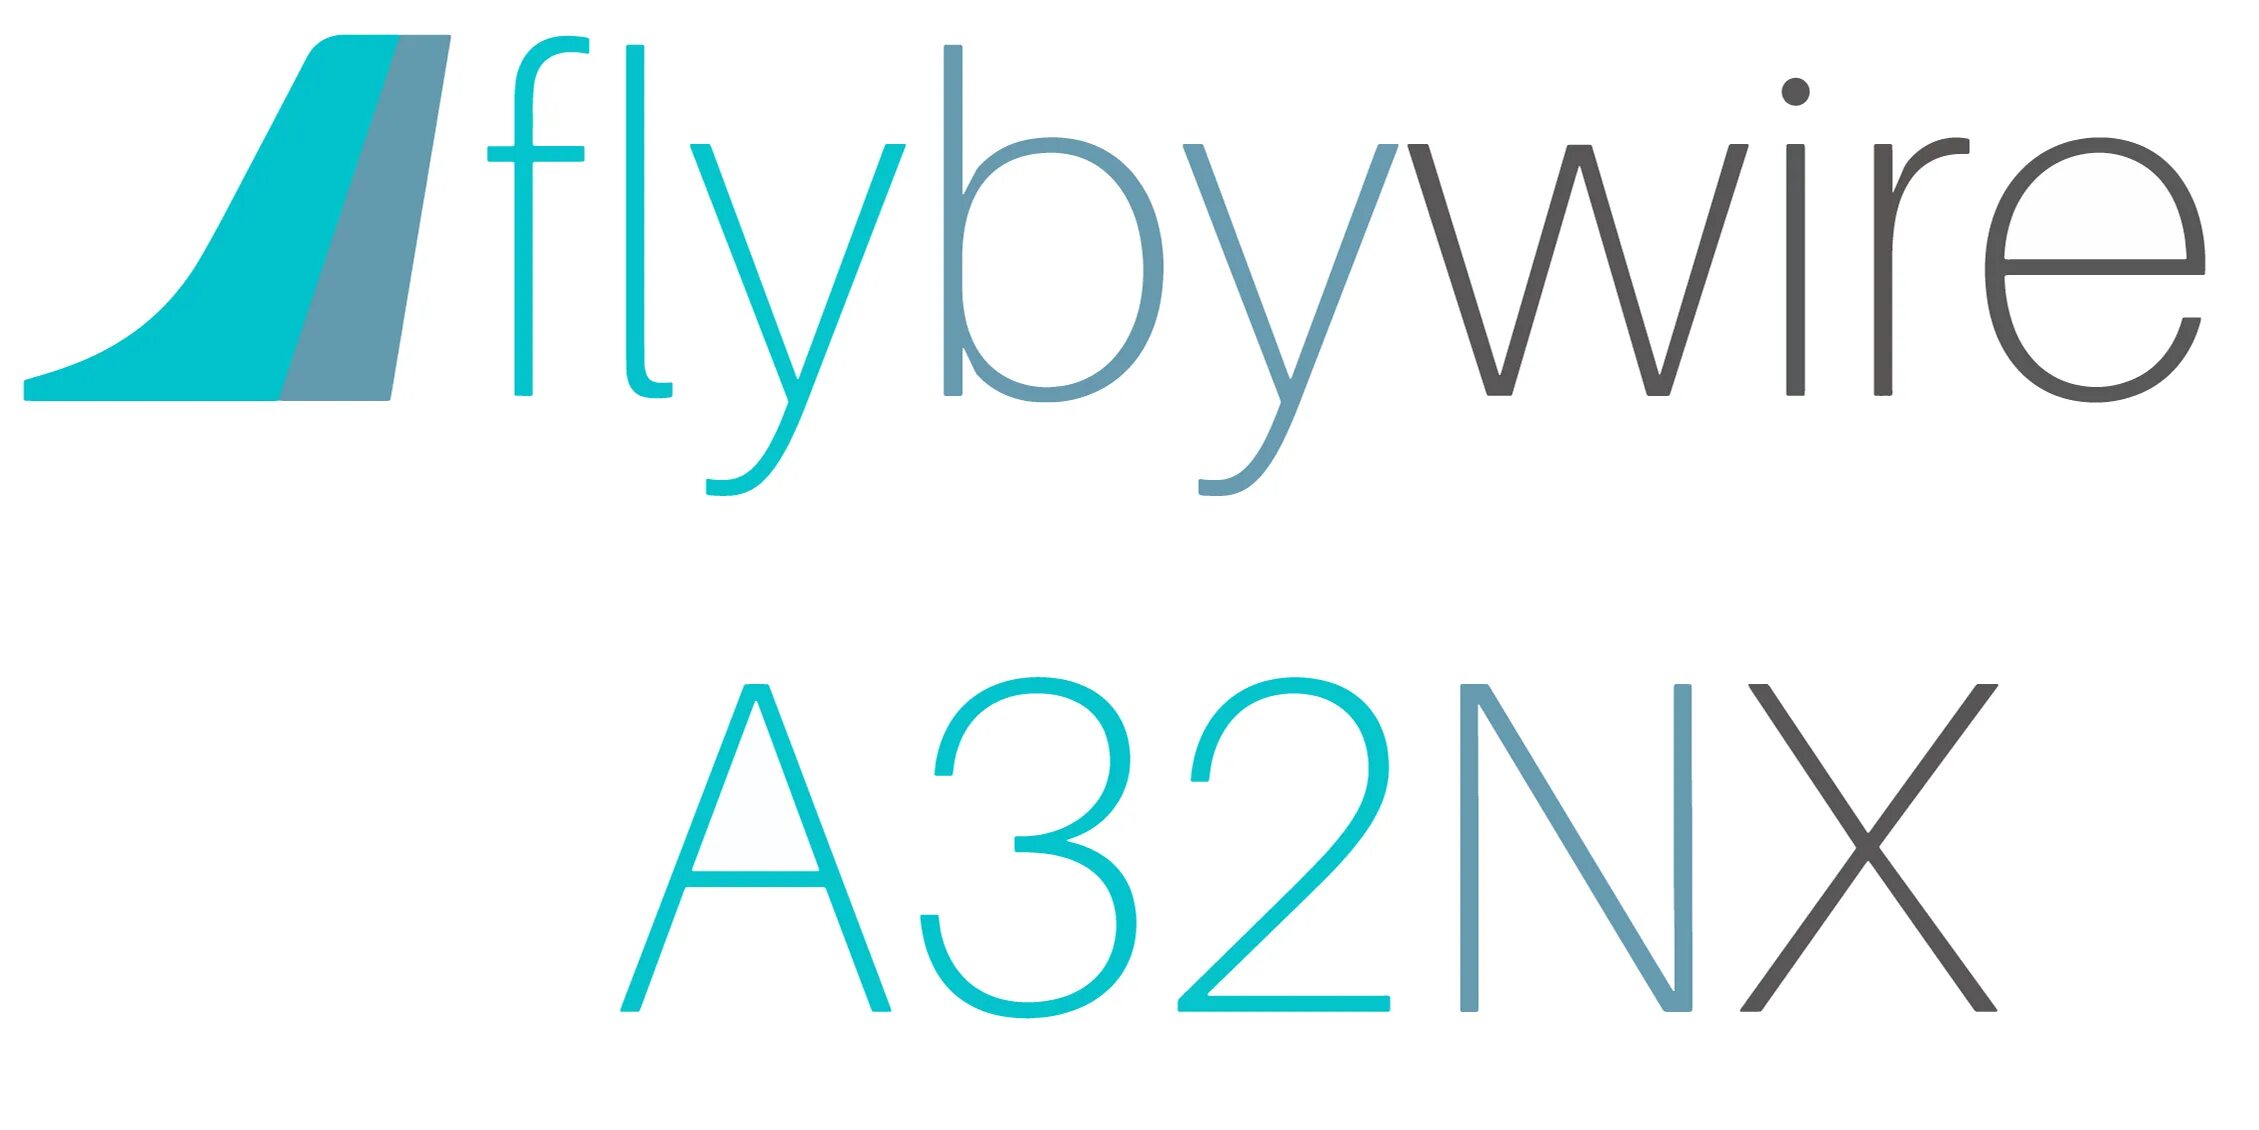 Flybywire scheme.